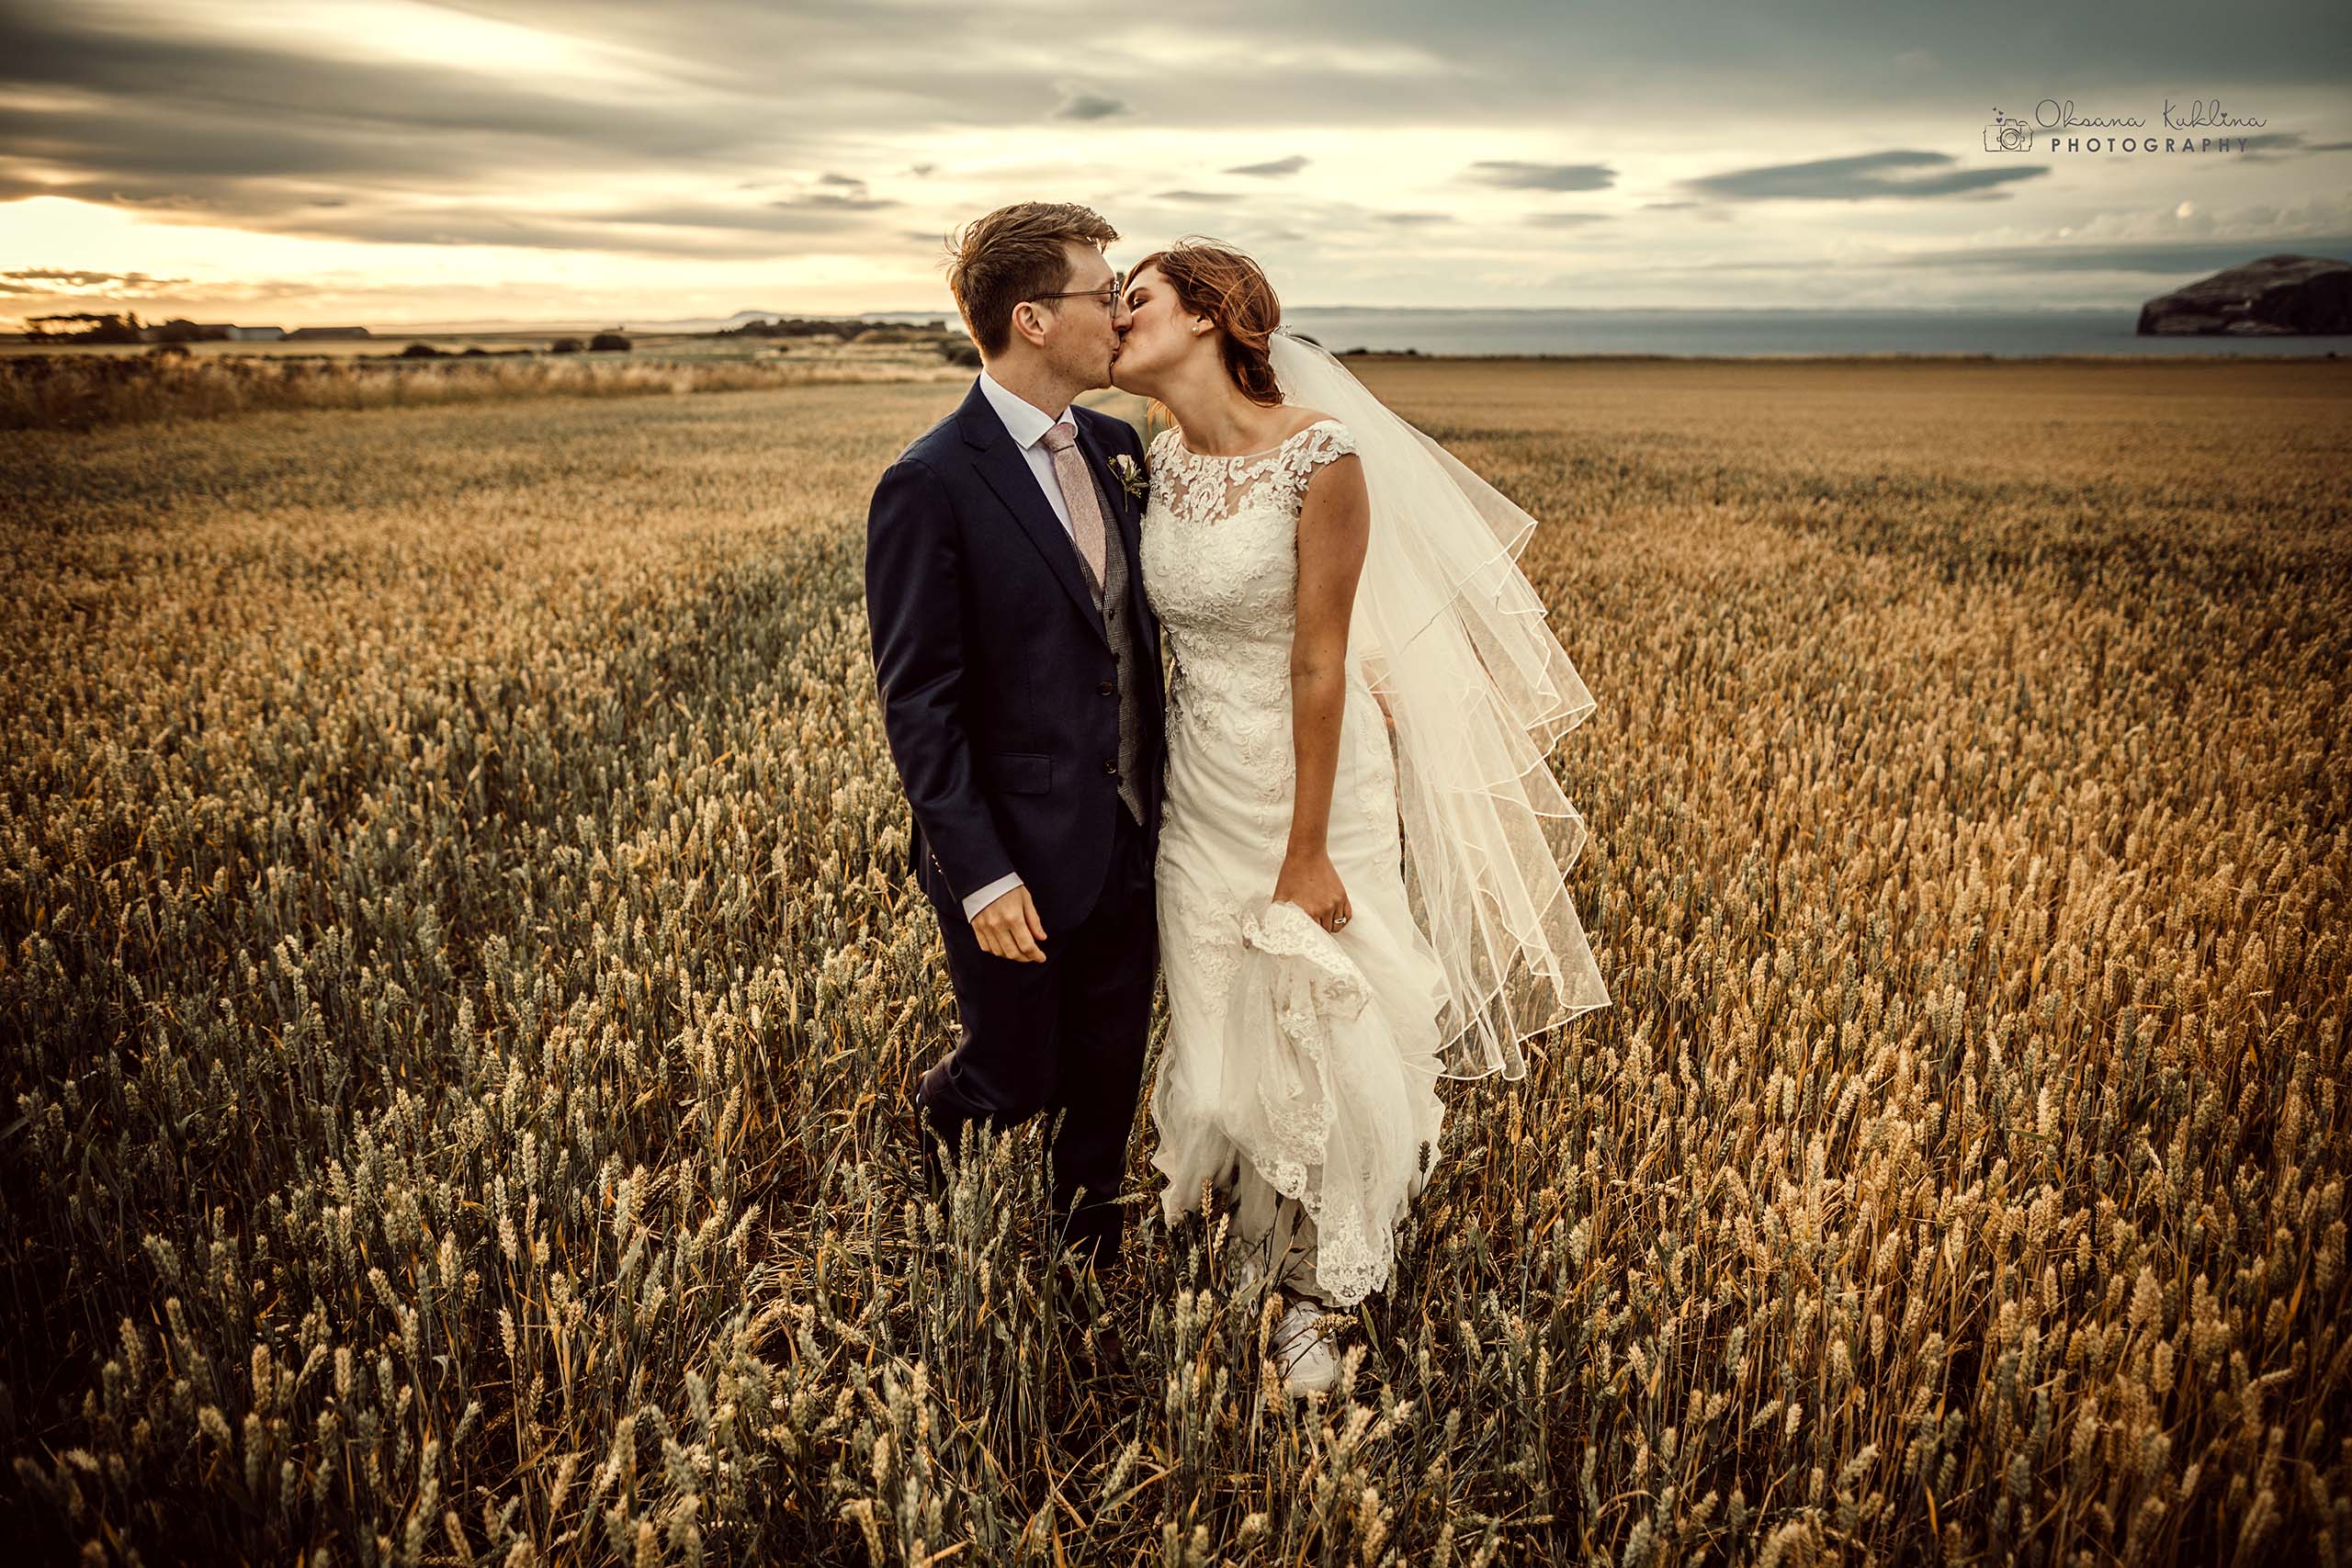 Top trouwfotograaf Nederland & bruidsfotograaf met spontane bruidsfotografie met trouwreportage van geweldige trouwdag, elopement, bruiloft, huwelijk, partnerschap en destination wedding voor bruid en bruidegom, een bruidspaar.